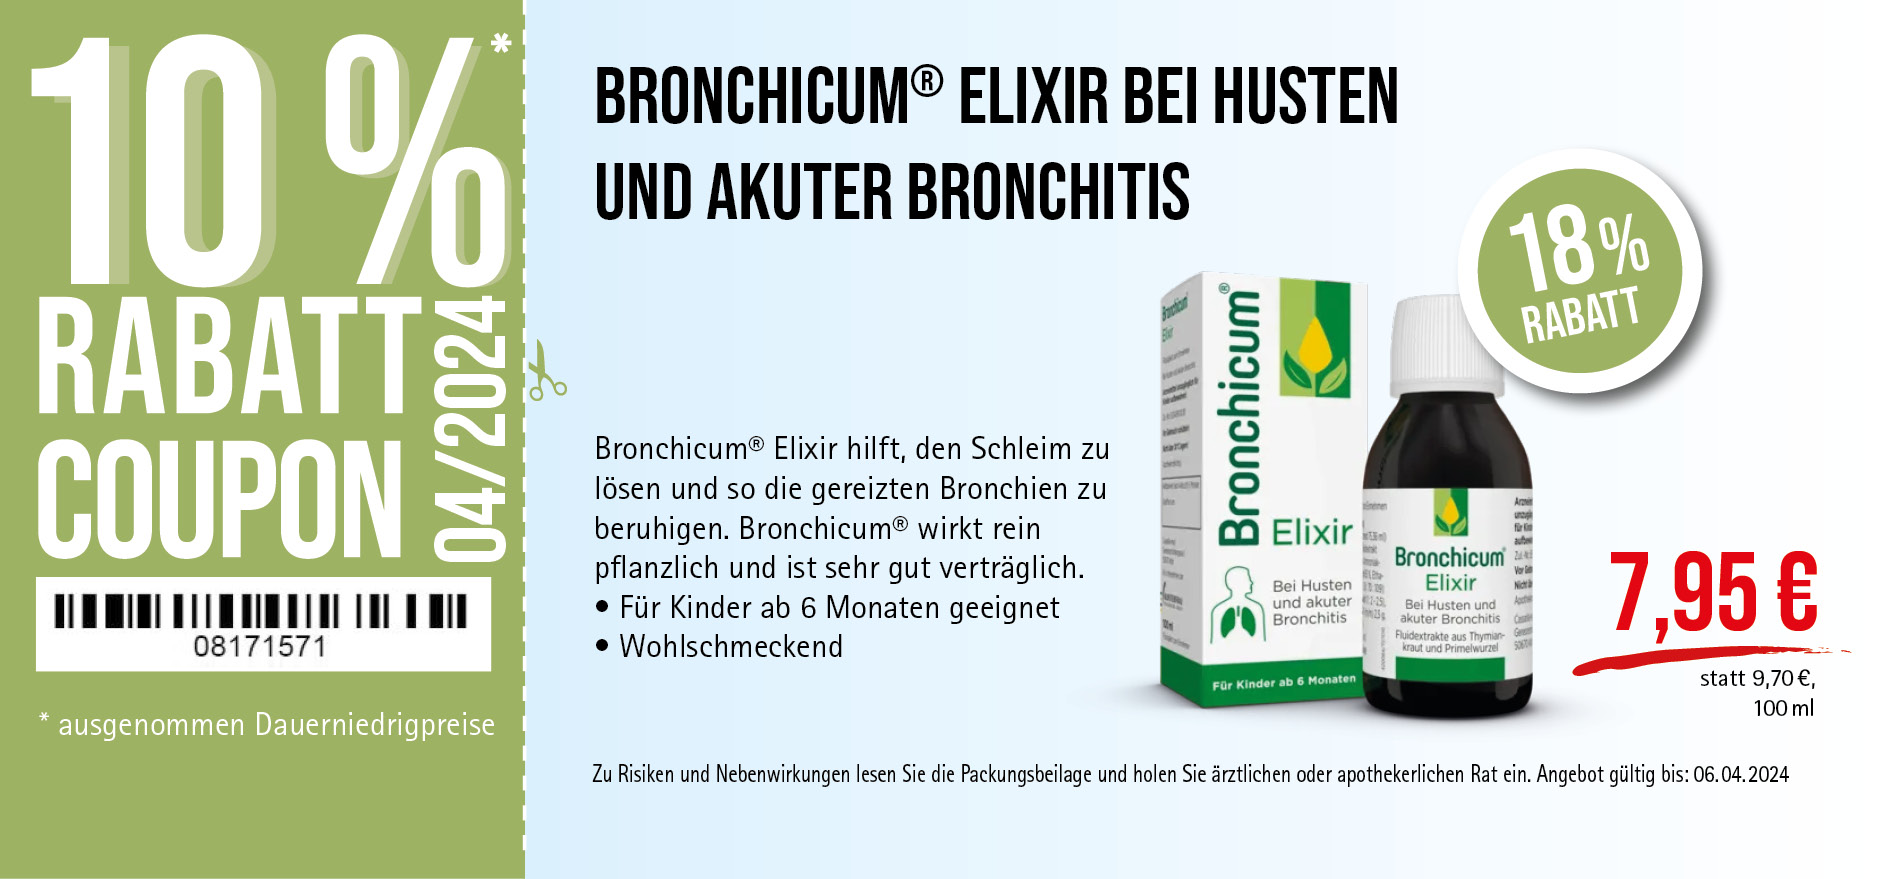 Bronchicum® Elixir, 7,95€ statt 9,70€, Angebot gültig bis 06.04.2024, zu Risiken und Nebenwirkungen lesen Sie die Packungsbeilage und holen Sie ärztlichen oder apothekerlichen Rat ein